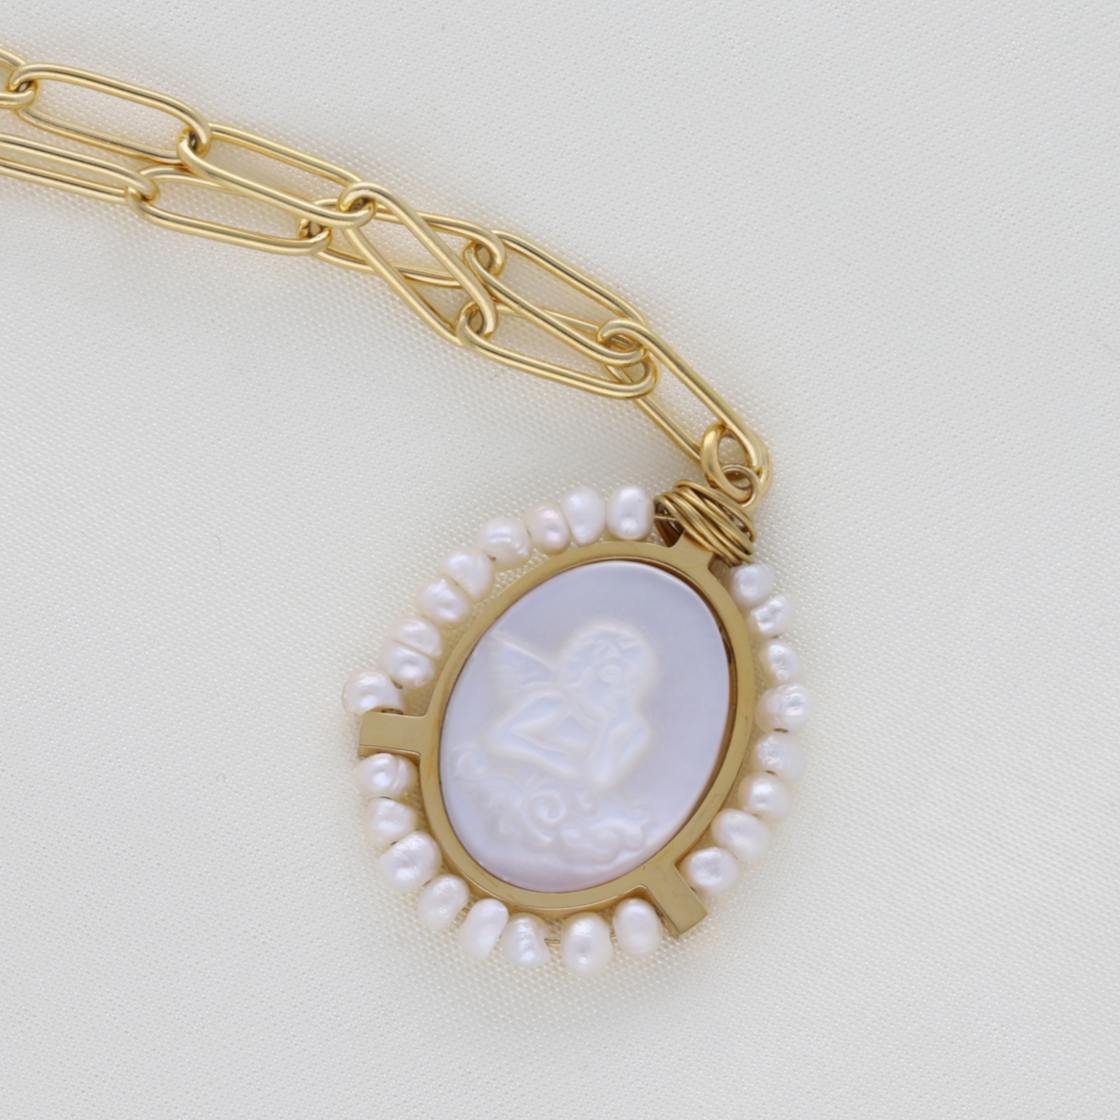 Su medalla nacarada con un ángel grabado y rodeado de perlas naturales , hacen de este colgante de 23 mm una joya especial y única. Su cadena mide 55 cm. Esta pieza es resistente al agua , 100% reciclable , hipoalergénica , de fácil mantenimiento , duradera y muy resistente.